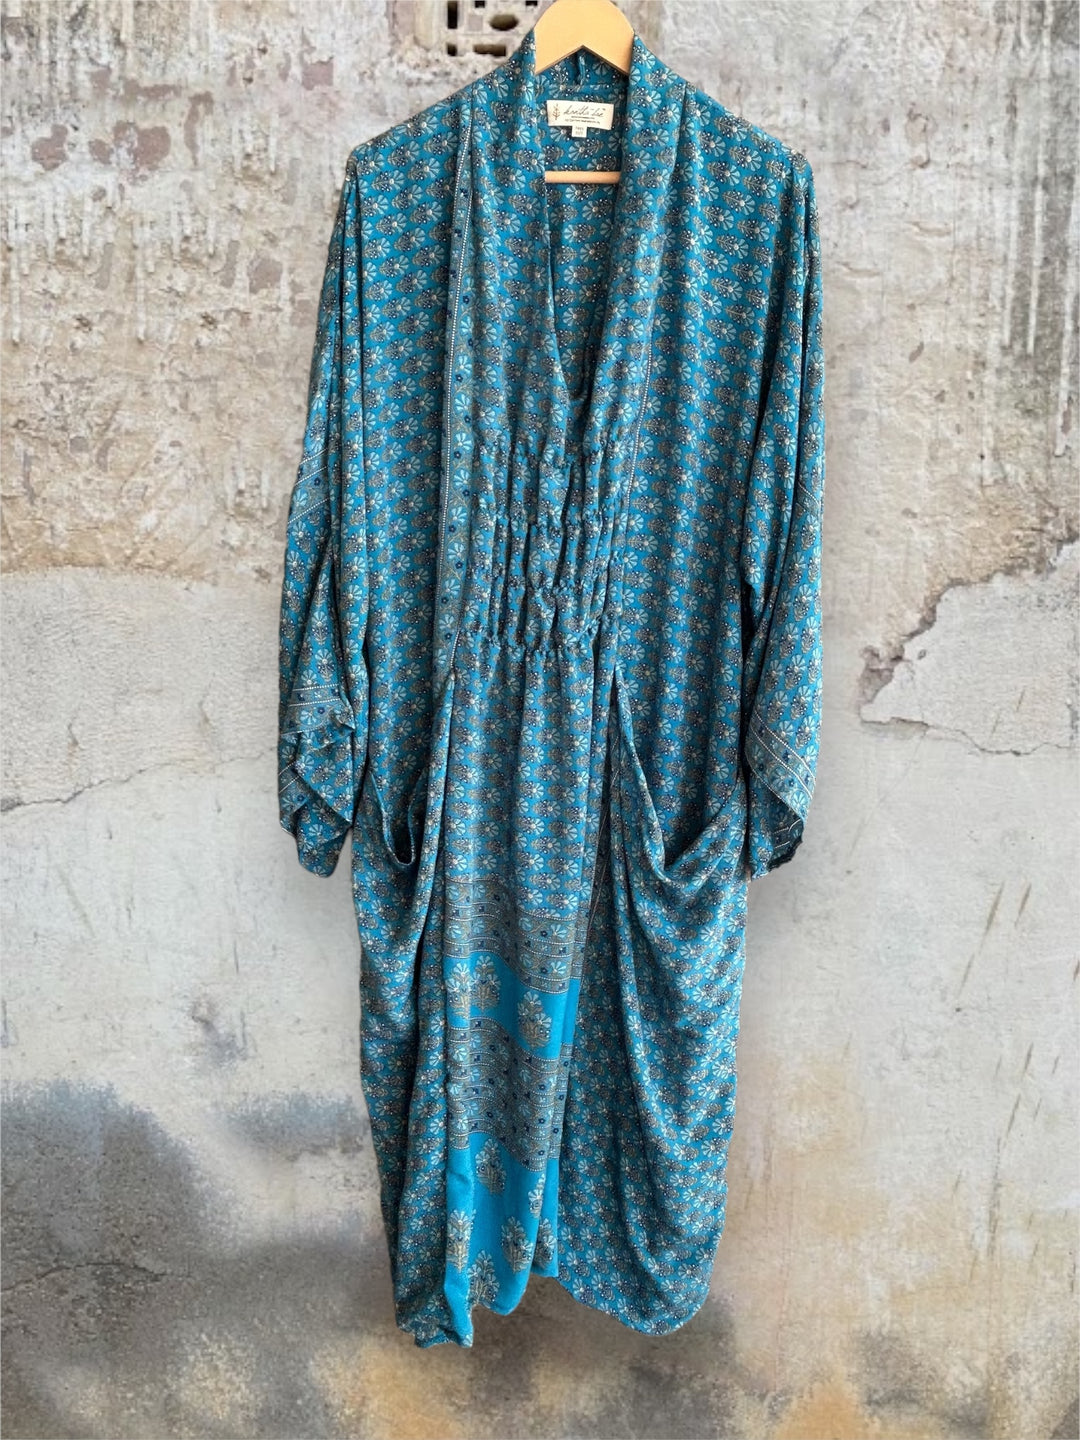 Ruched Dress 0424 188 - Kantha Bae